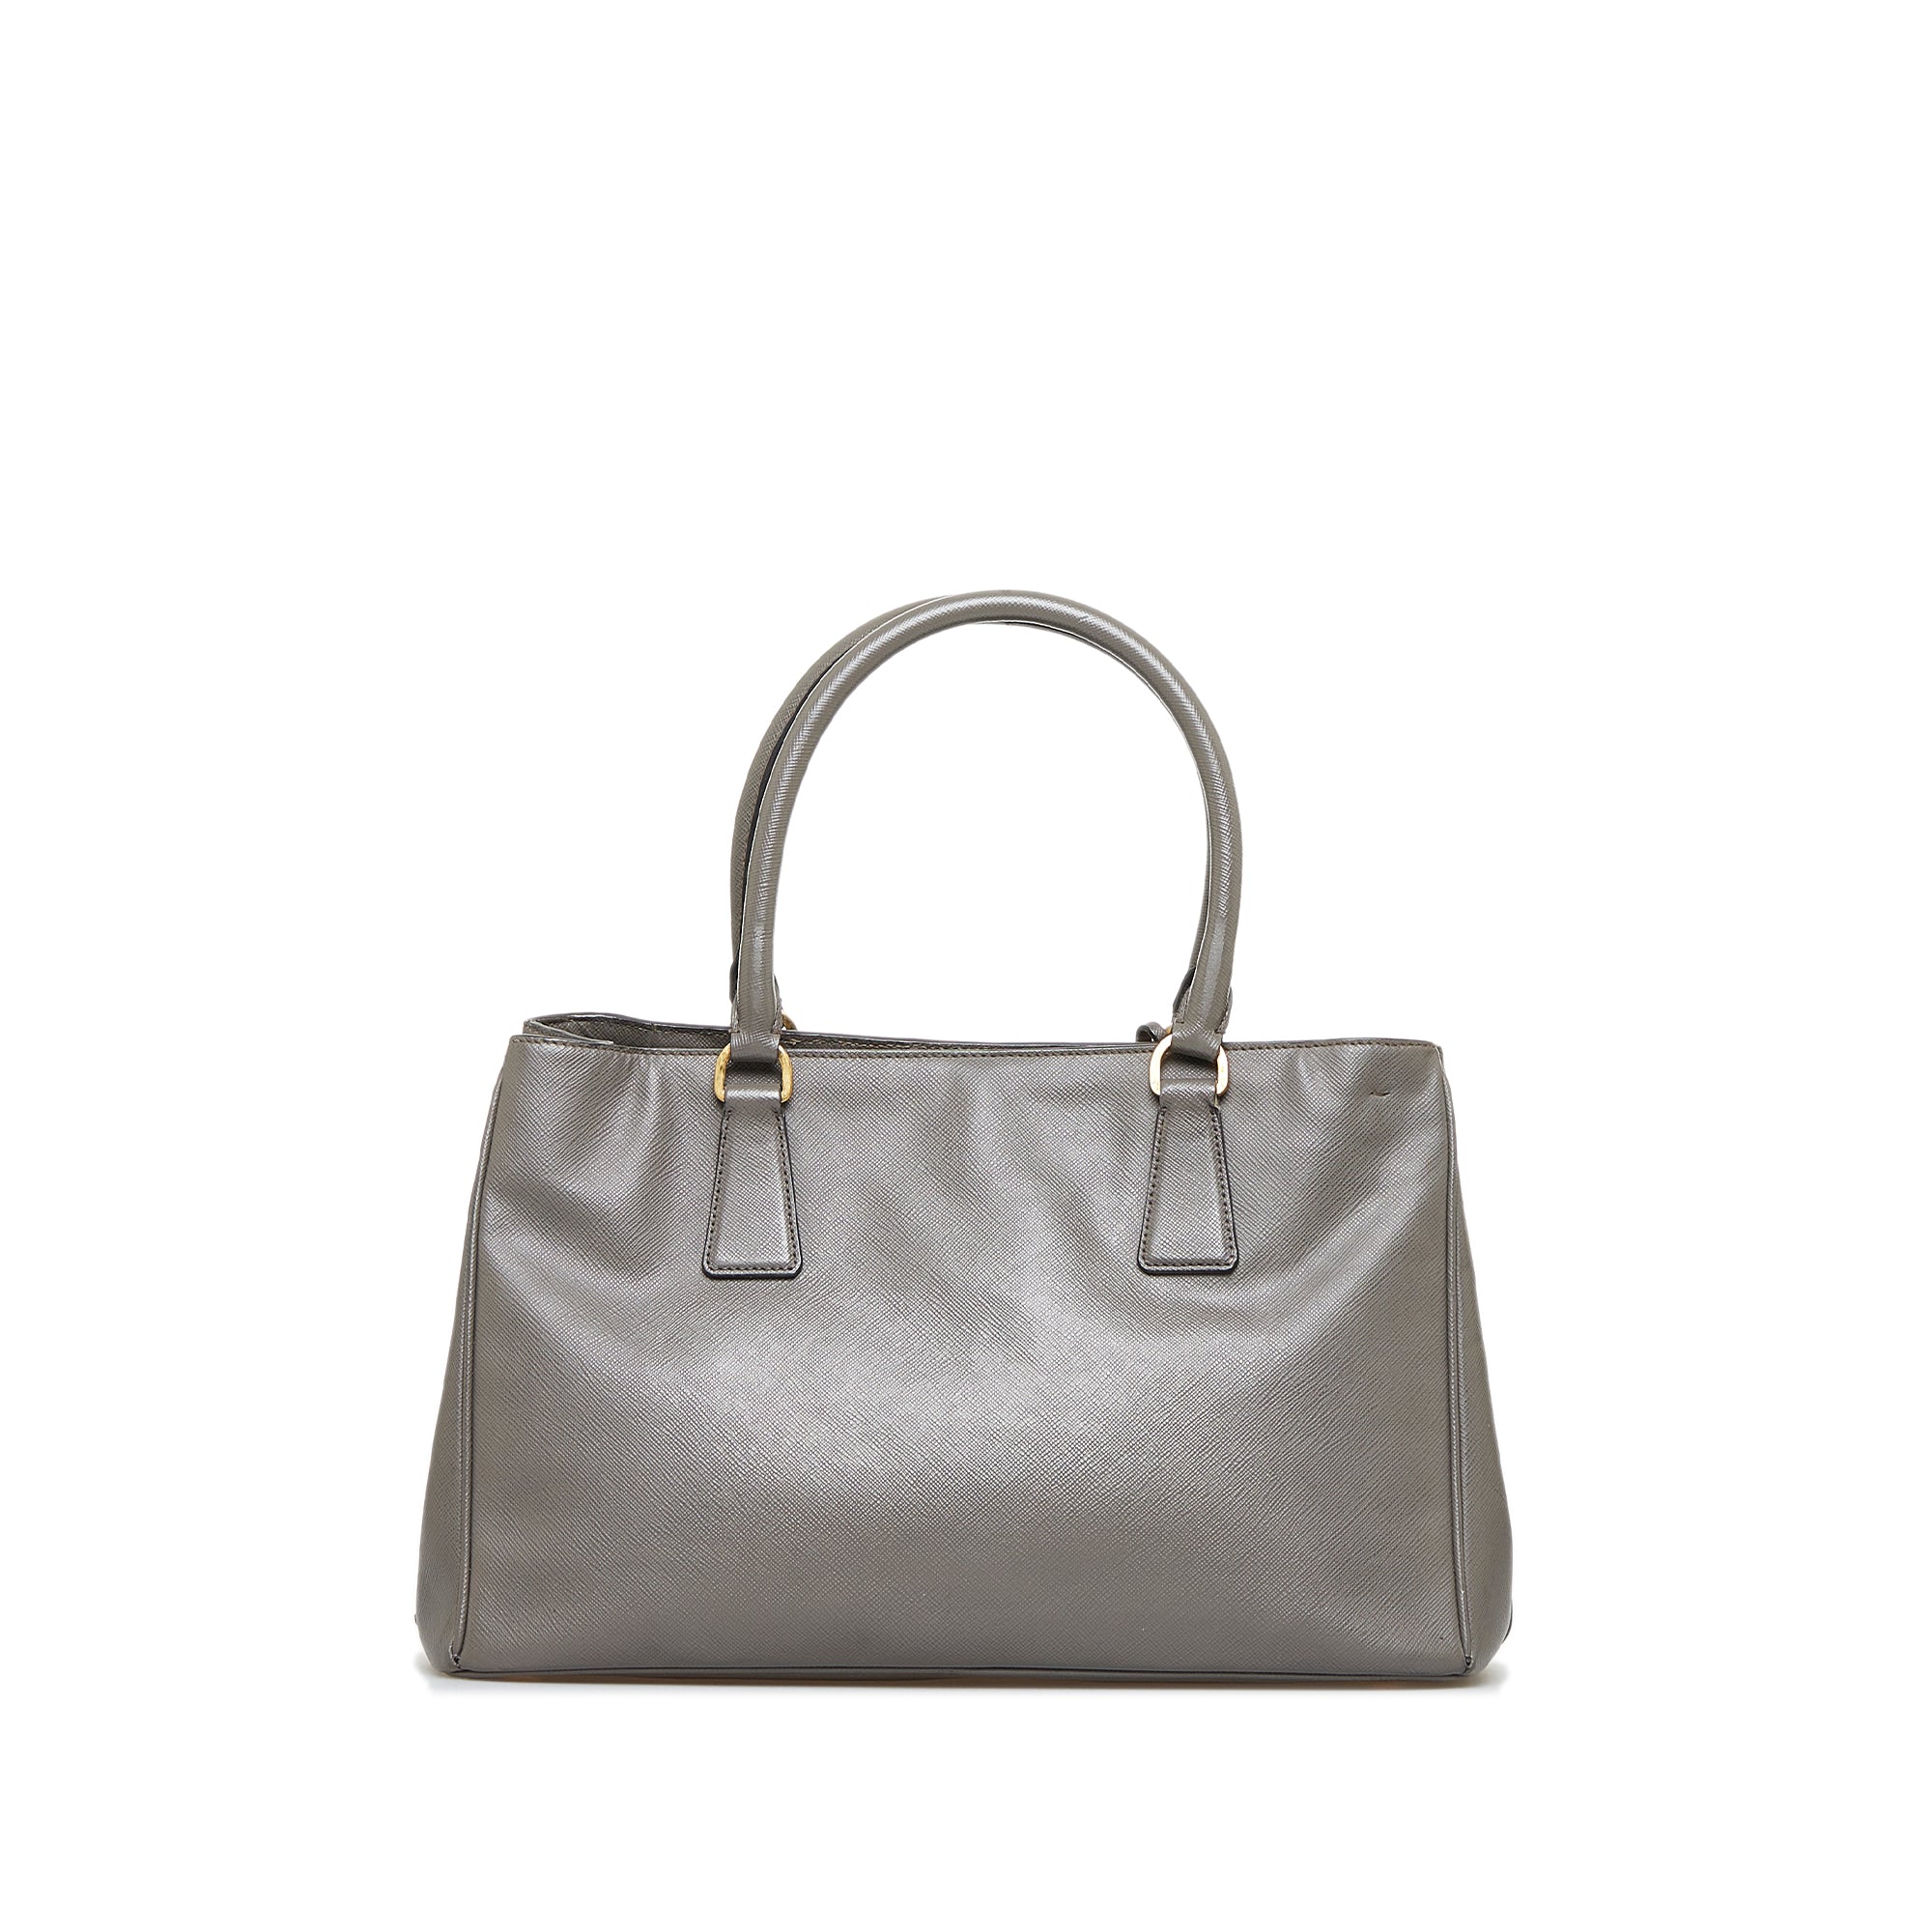 PRADA Grey Galleria Saffiano Large Bag*100% Authentic*